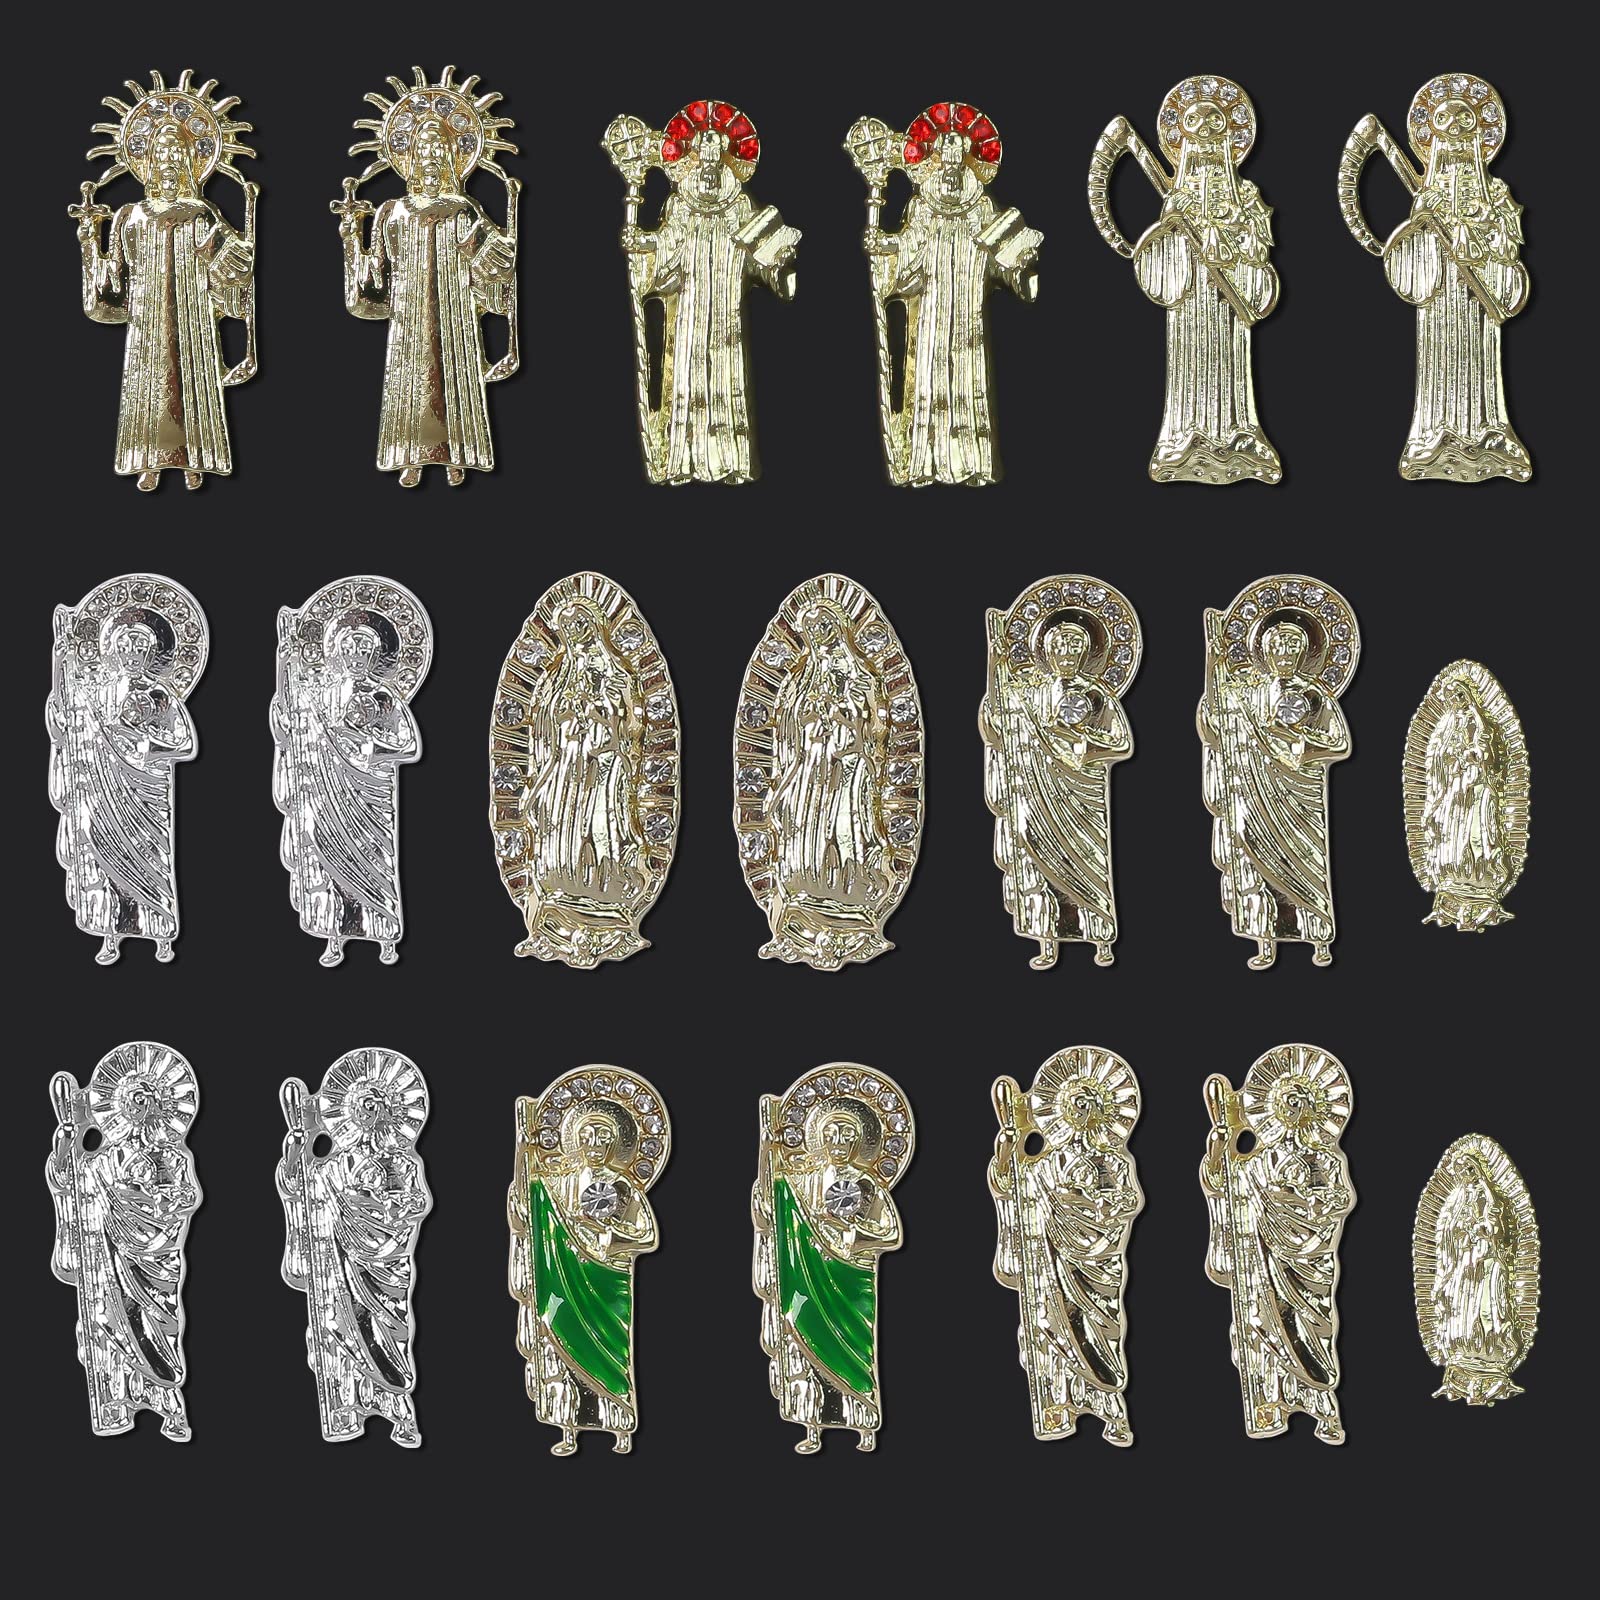 3D Virgin Mary Nail Art Charms San Judas Nail Charm Alloy Virgin Mary  Charms for Nails